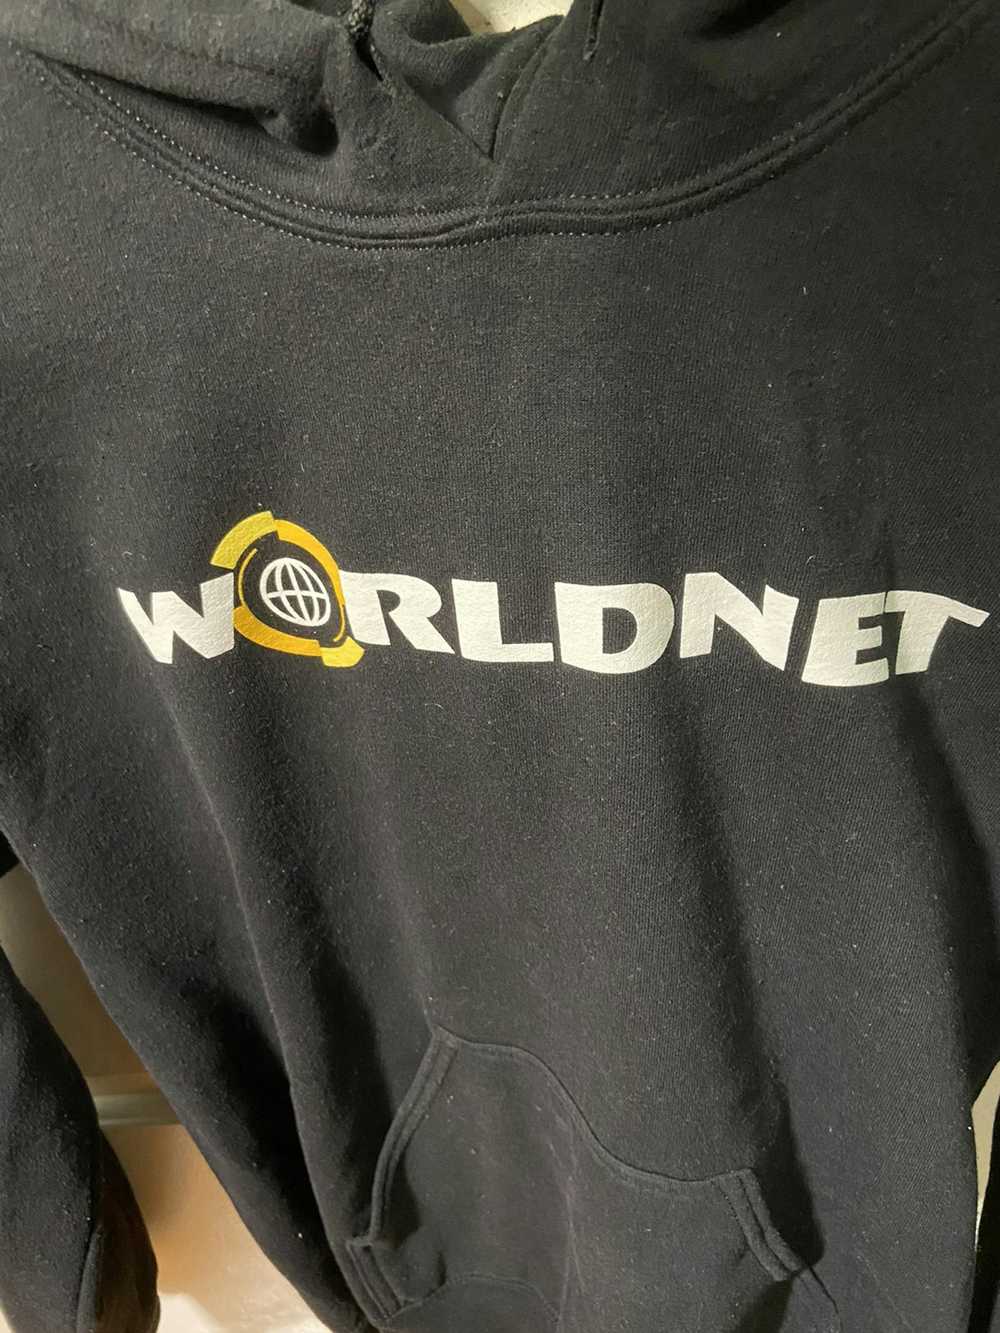 Frank Ocean Frank Ocean Worldnet logo hoodie - image 2